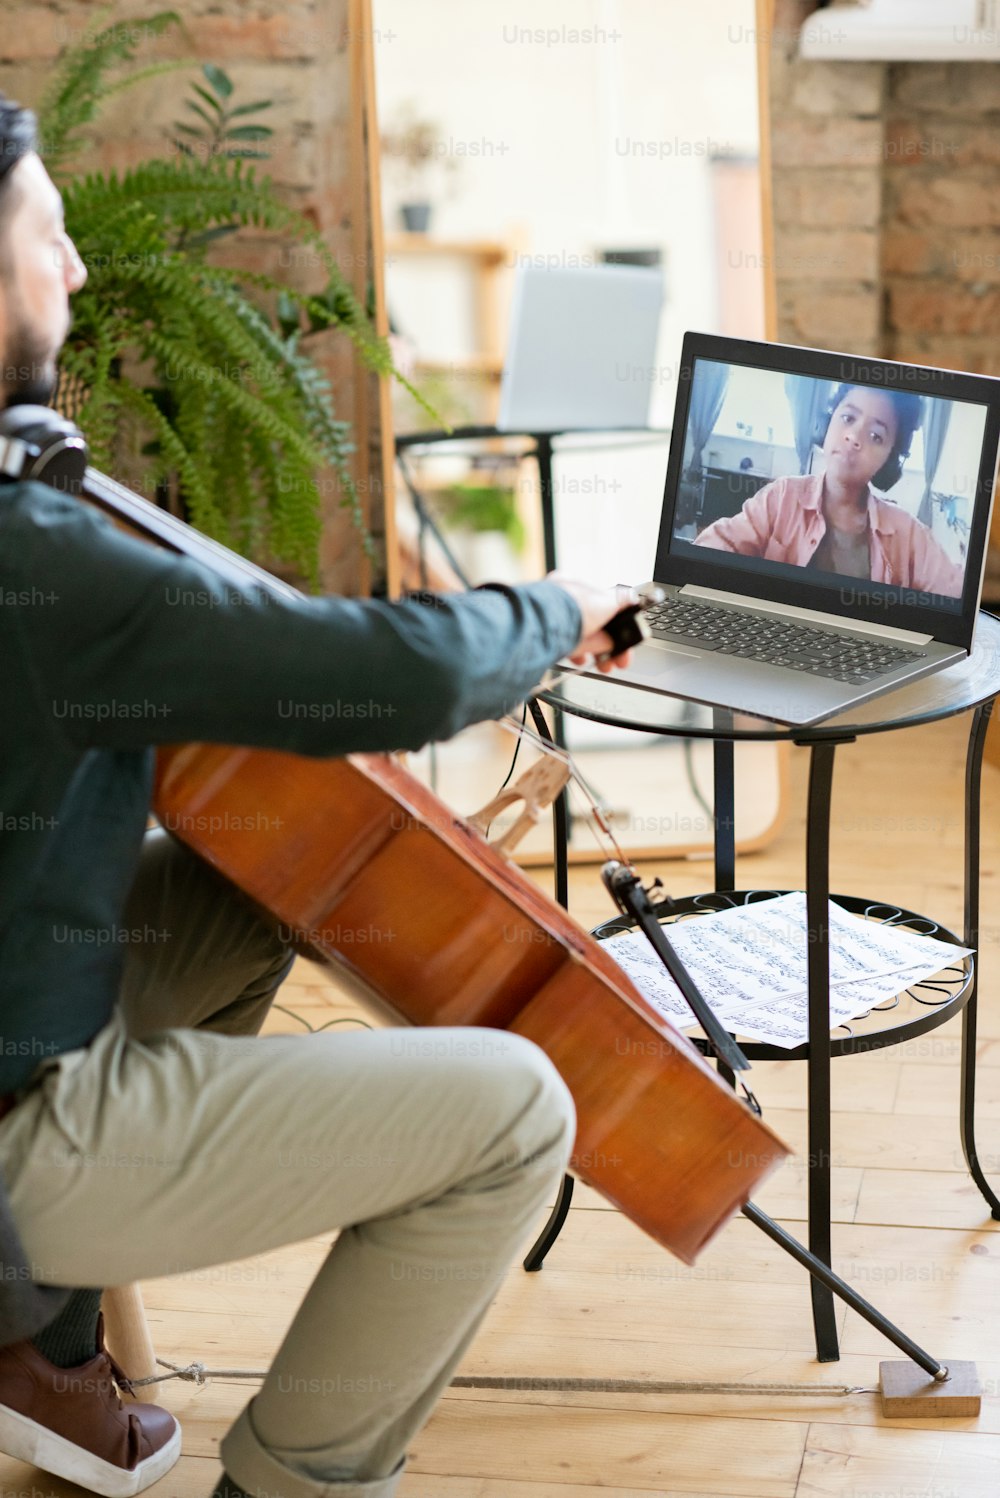 Écolier africain mignon sur l’écran d’un ordinateur portable regardant un professeur de musique jouant du violoncelle tout en étant assis dans un environnement domestique